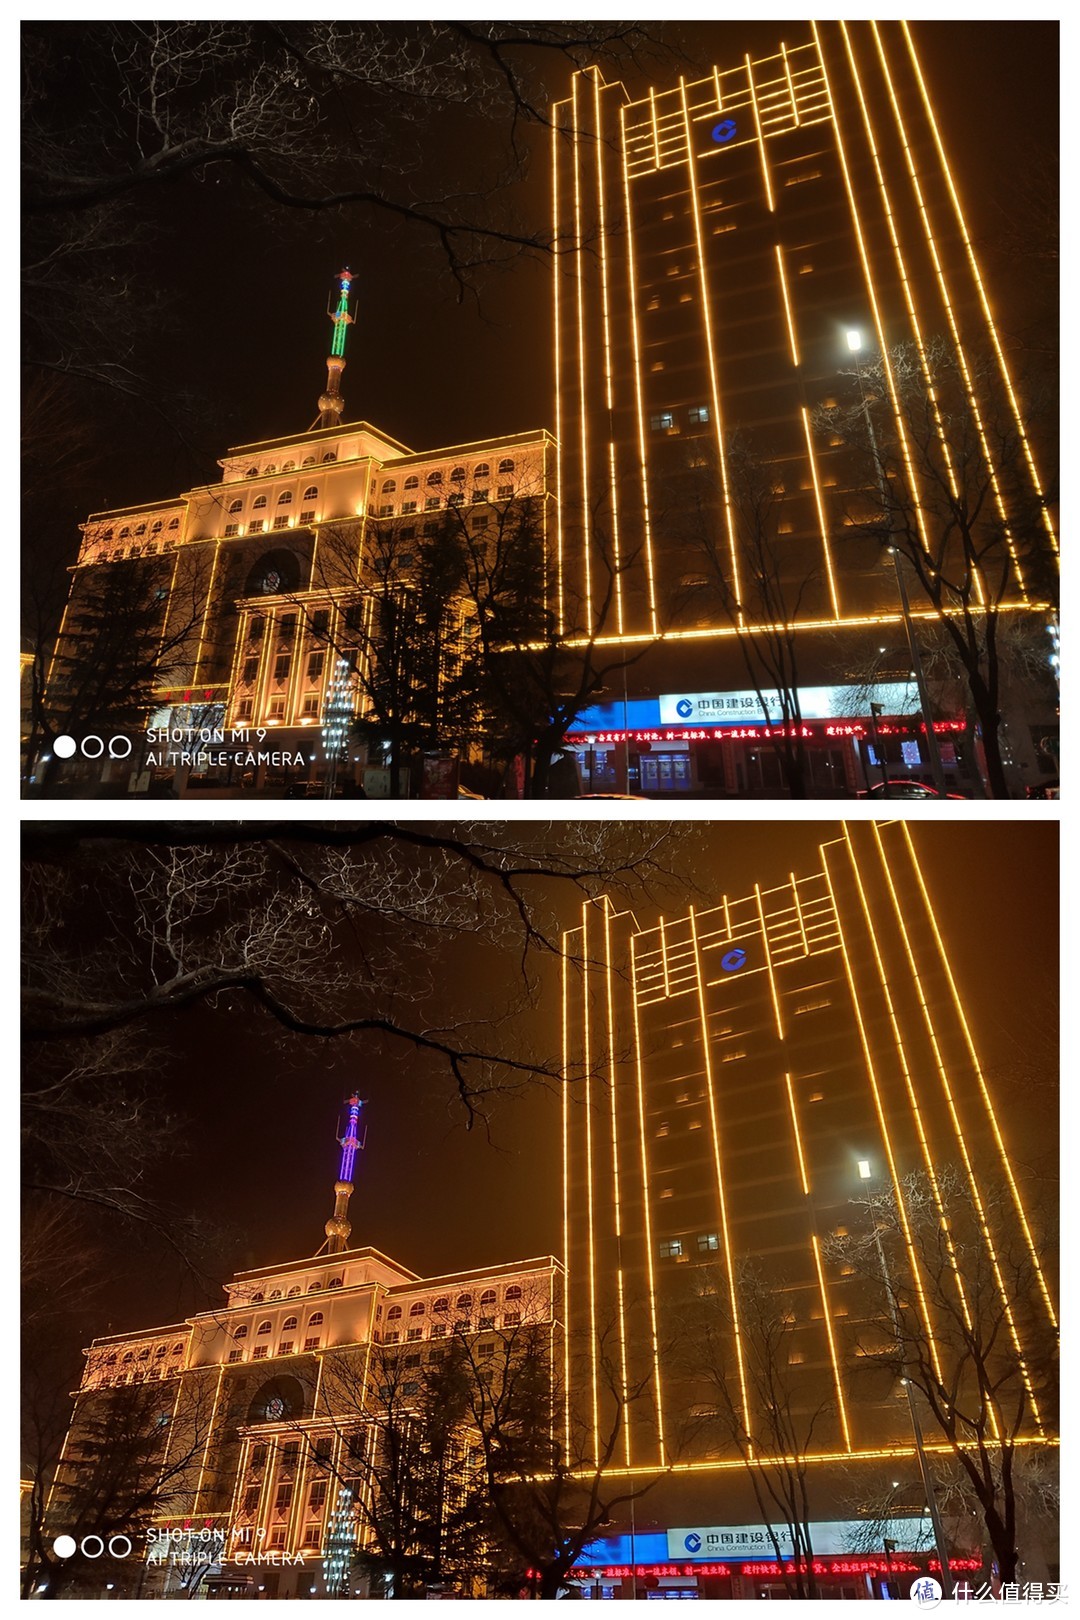 ▲上图AI模式，下图超级夜景。可以看到米9在面对这种光源的时候超级夜景模式甚至翻了车，右边大楼的轮廓夜景全部被打亮。